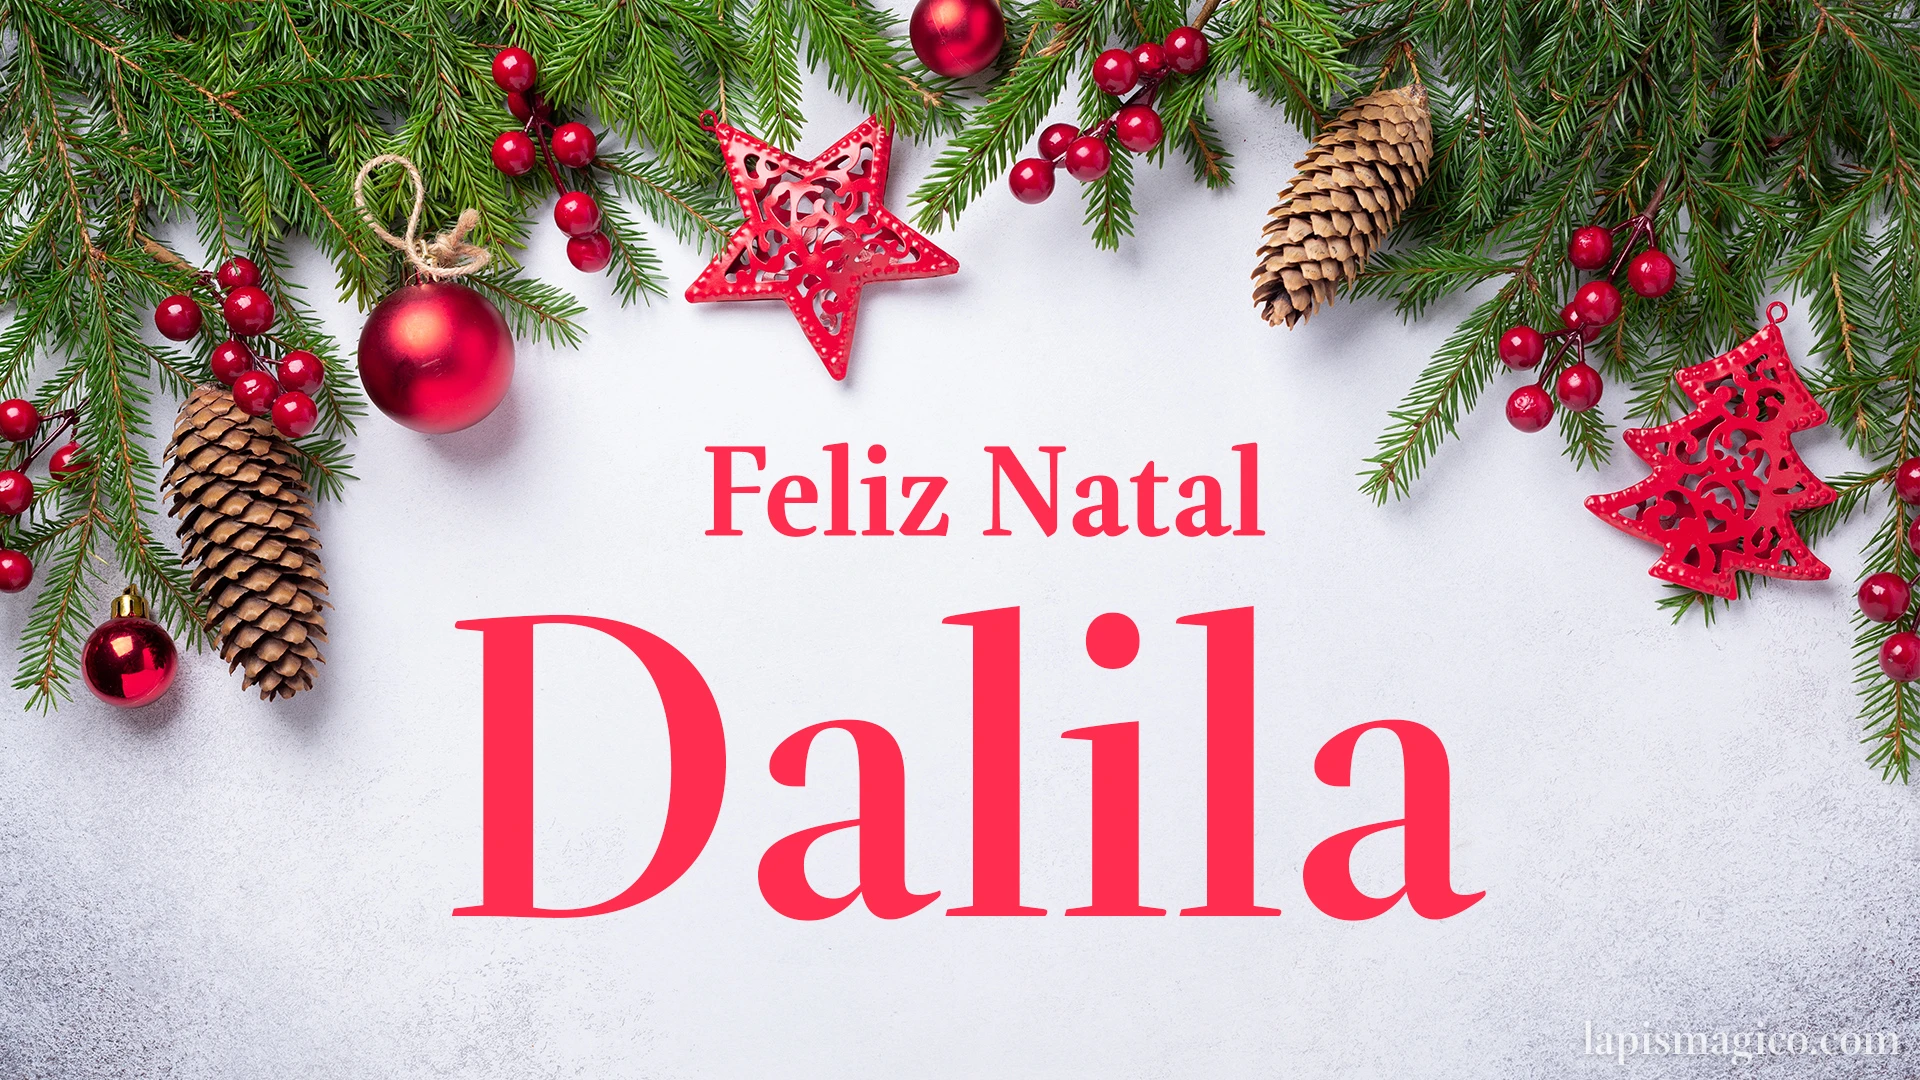 Oh Dalila, cinco postais de Feliz Natal Postal com o teu nome